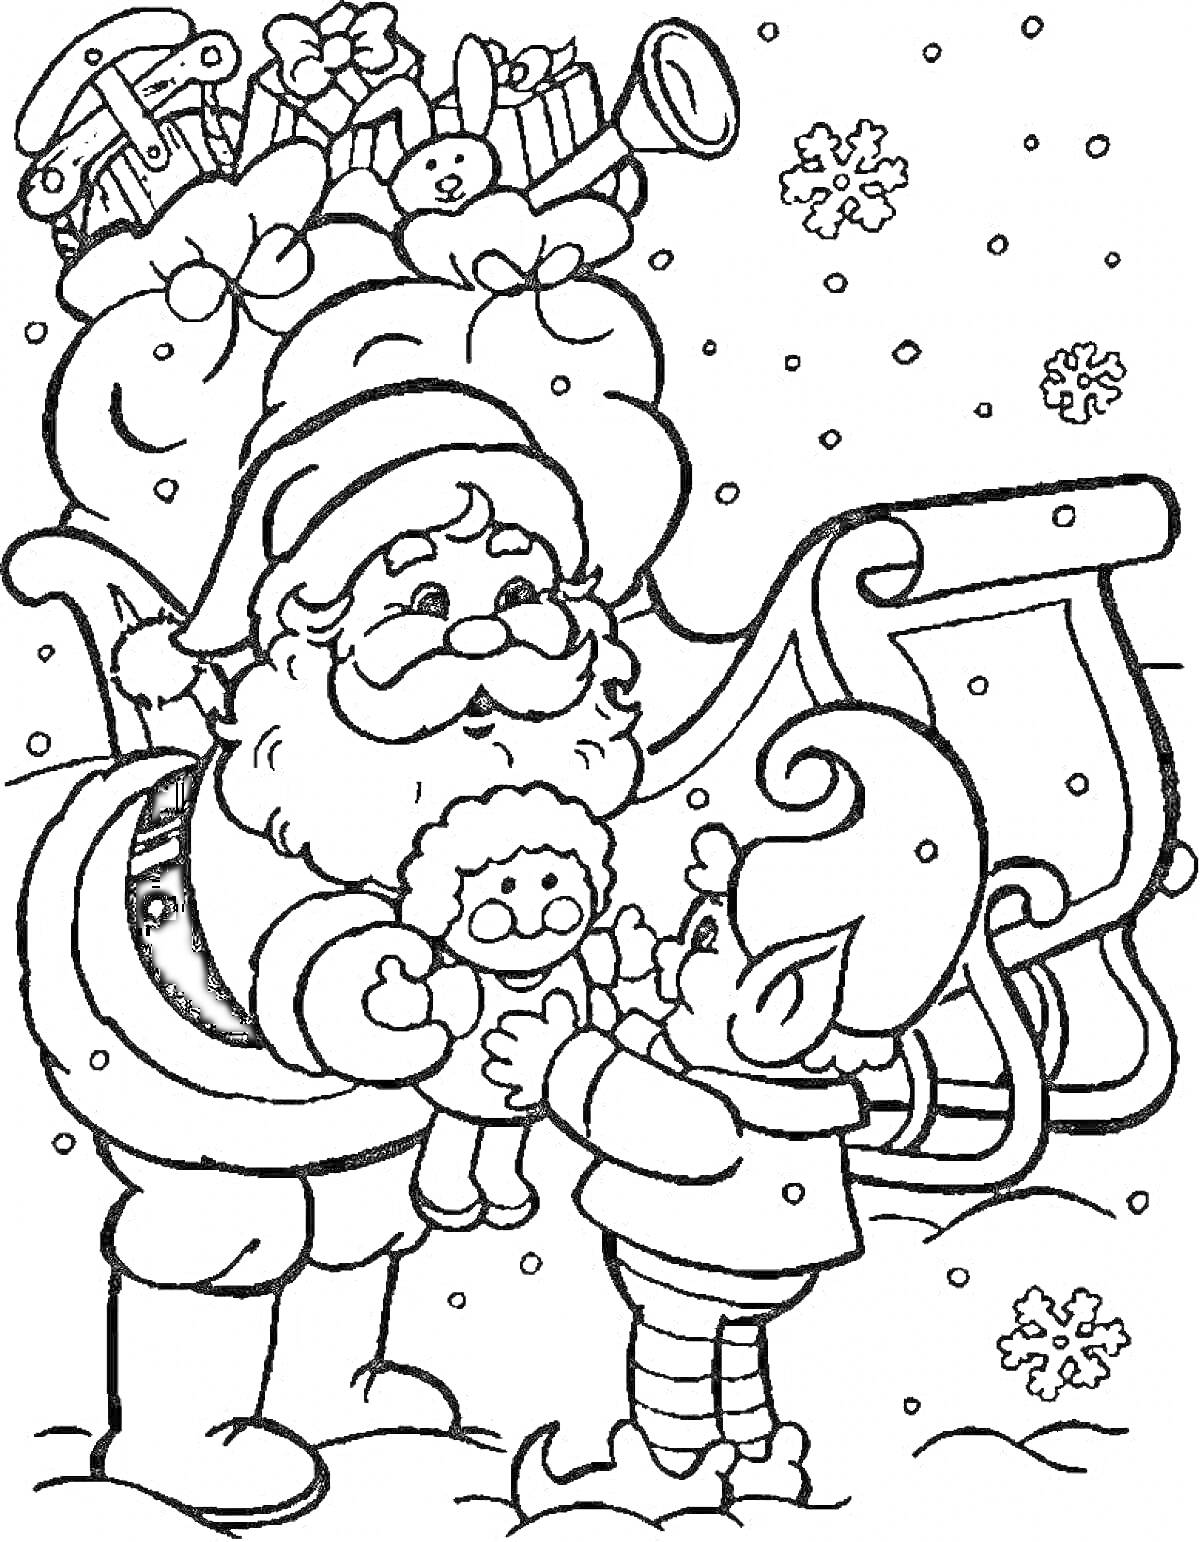 Раскраска Санта-Клаус с эльфом, который держит куклу, рядом с санями, полными игрушек, на фоне снега и снежинок.